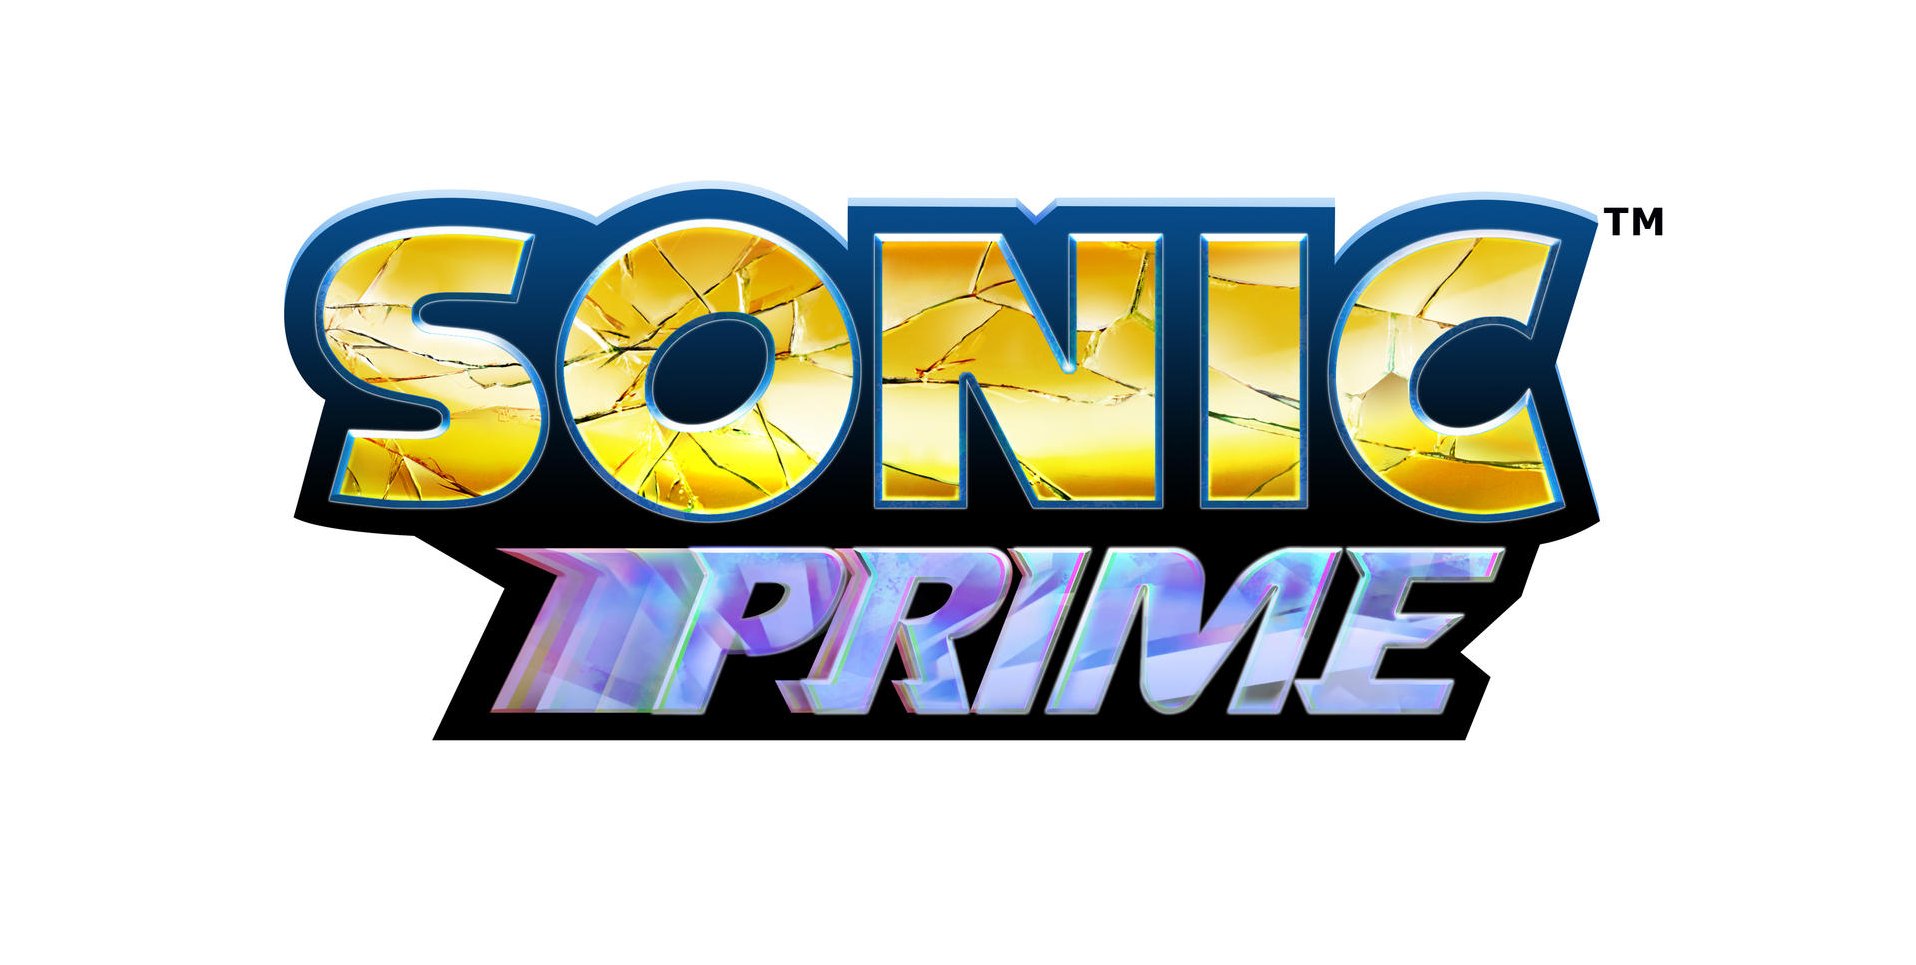 Netflix confirme le lancement de Sonic Prime pour 2022